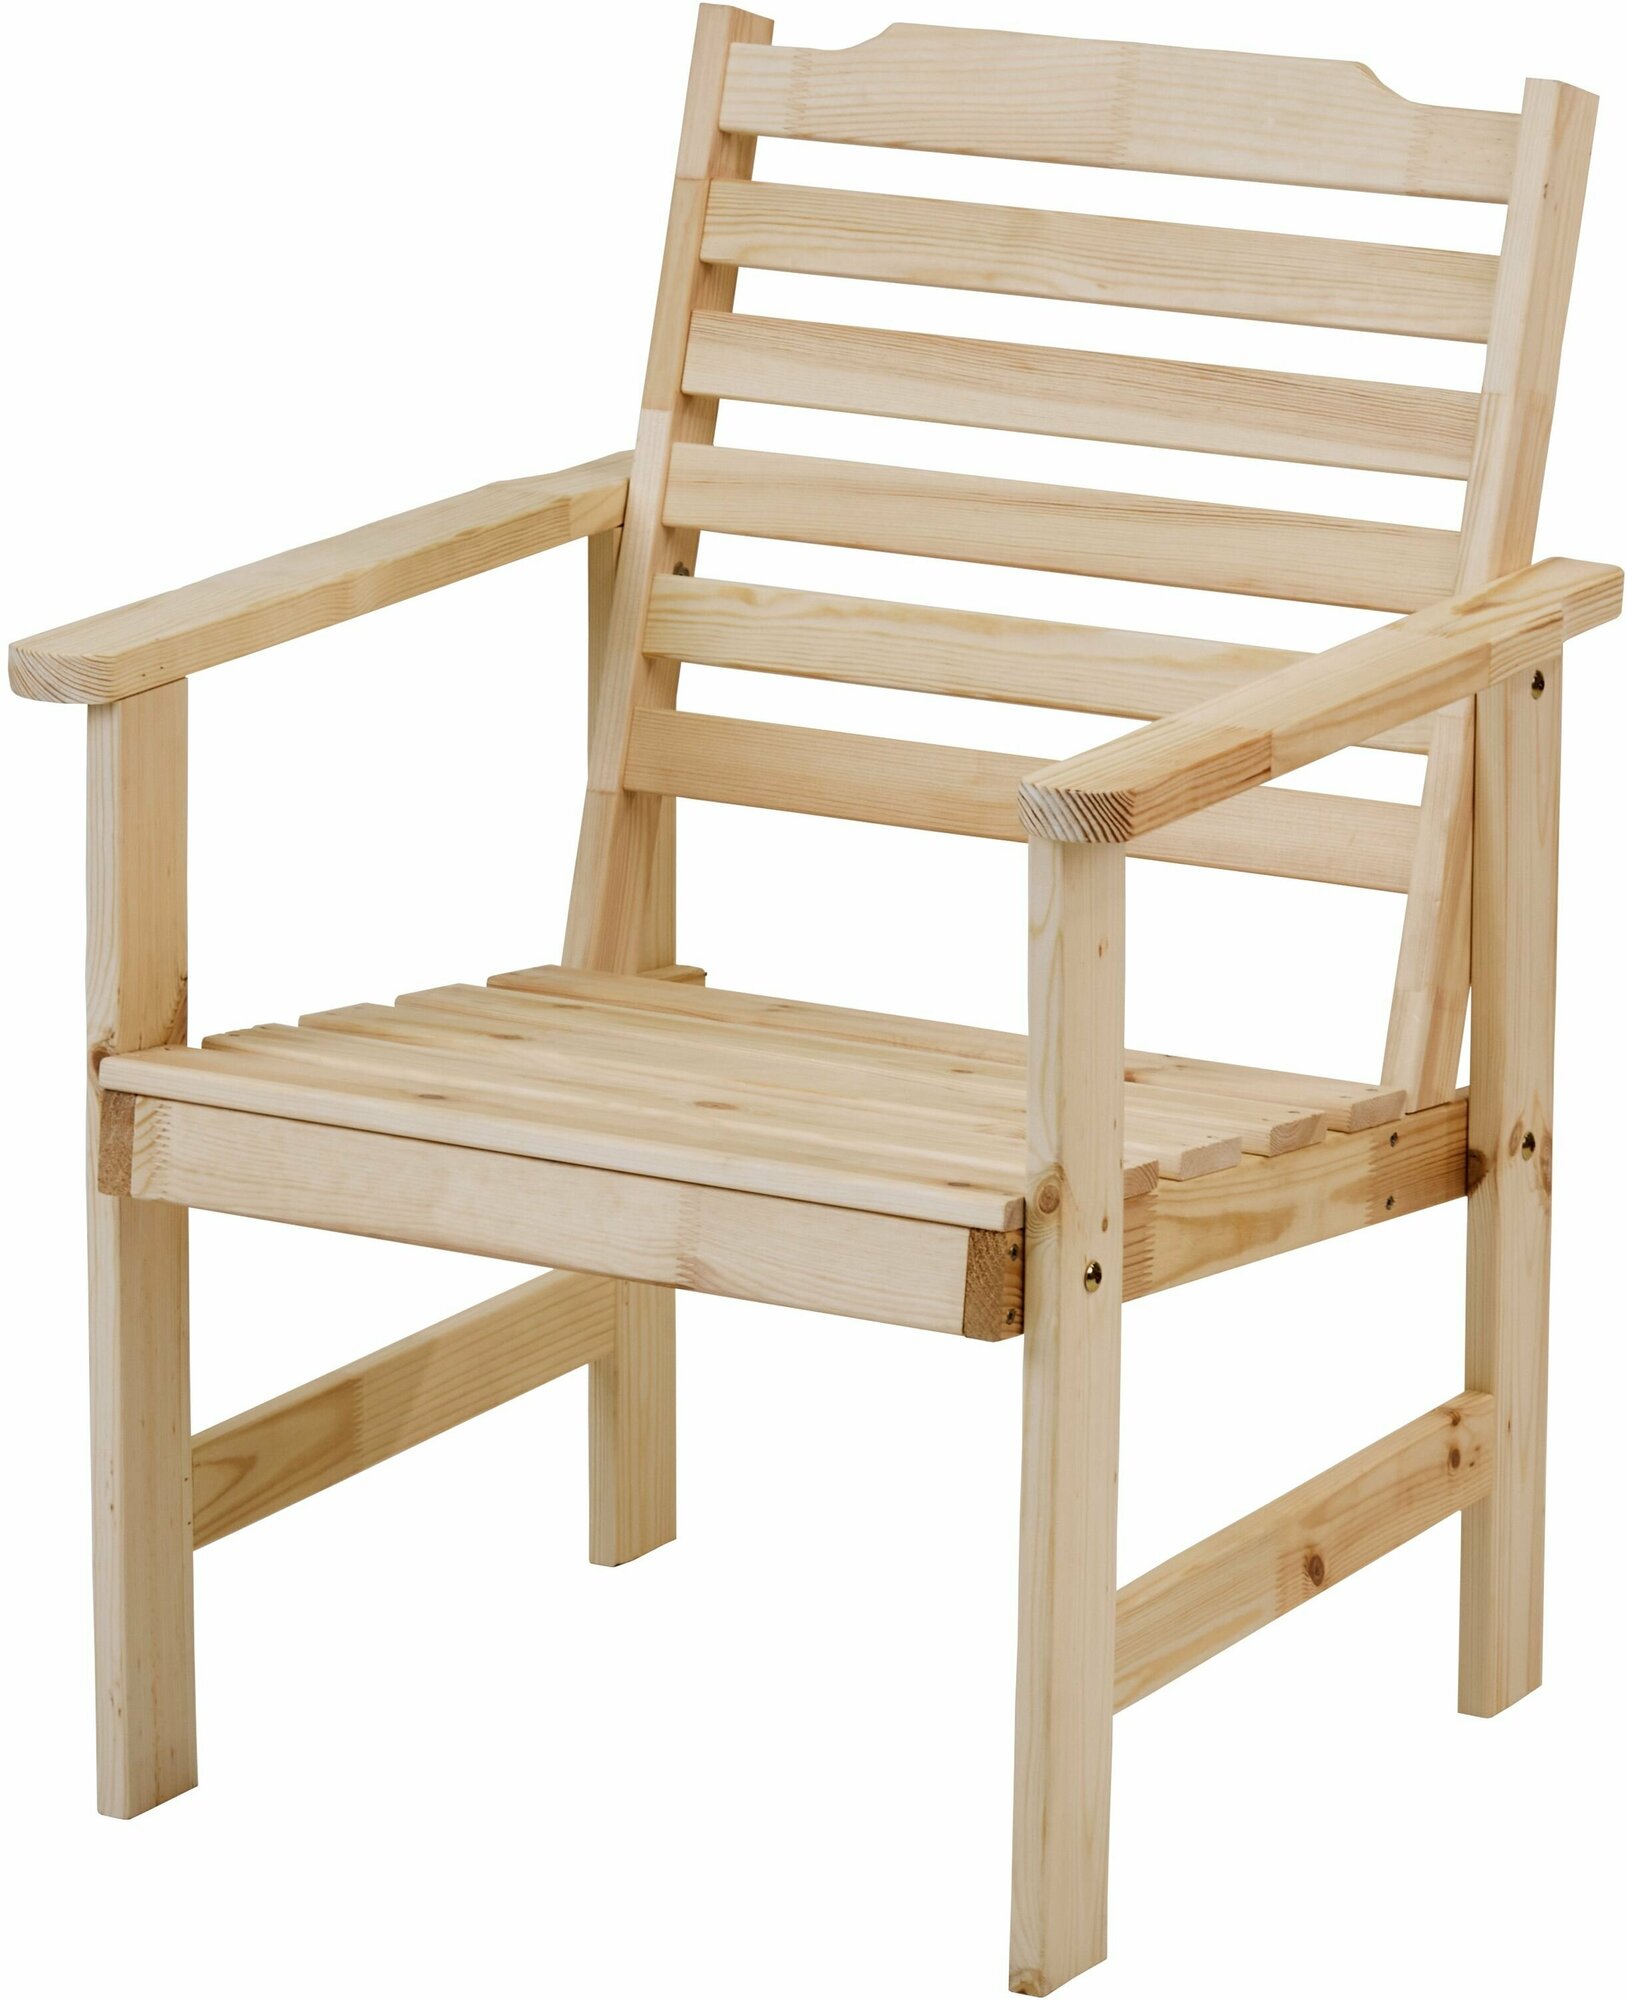 Кресло деревянное для сада и дачи, стэнхамн